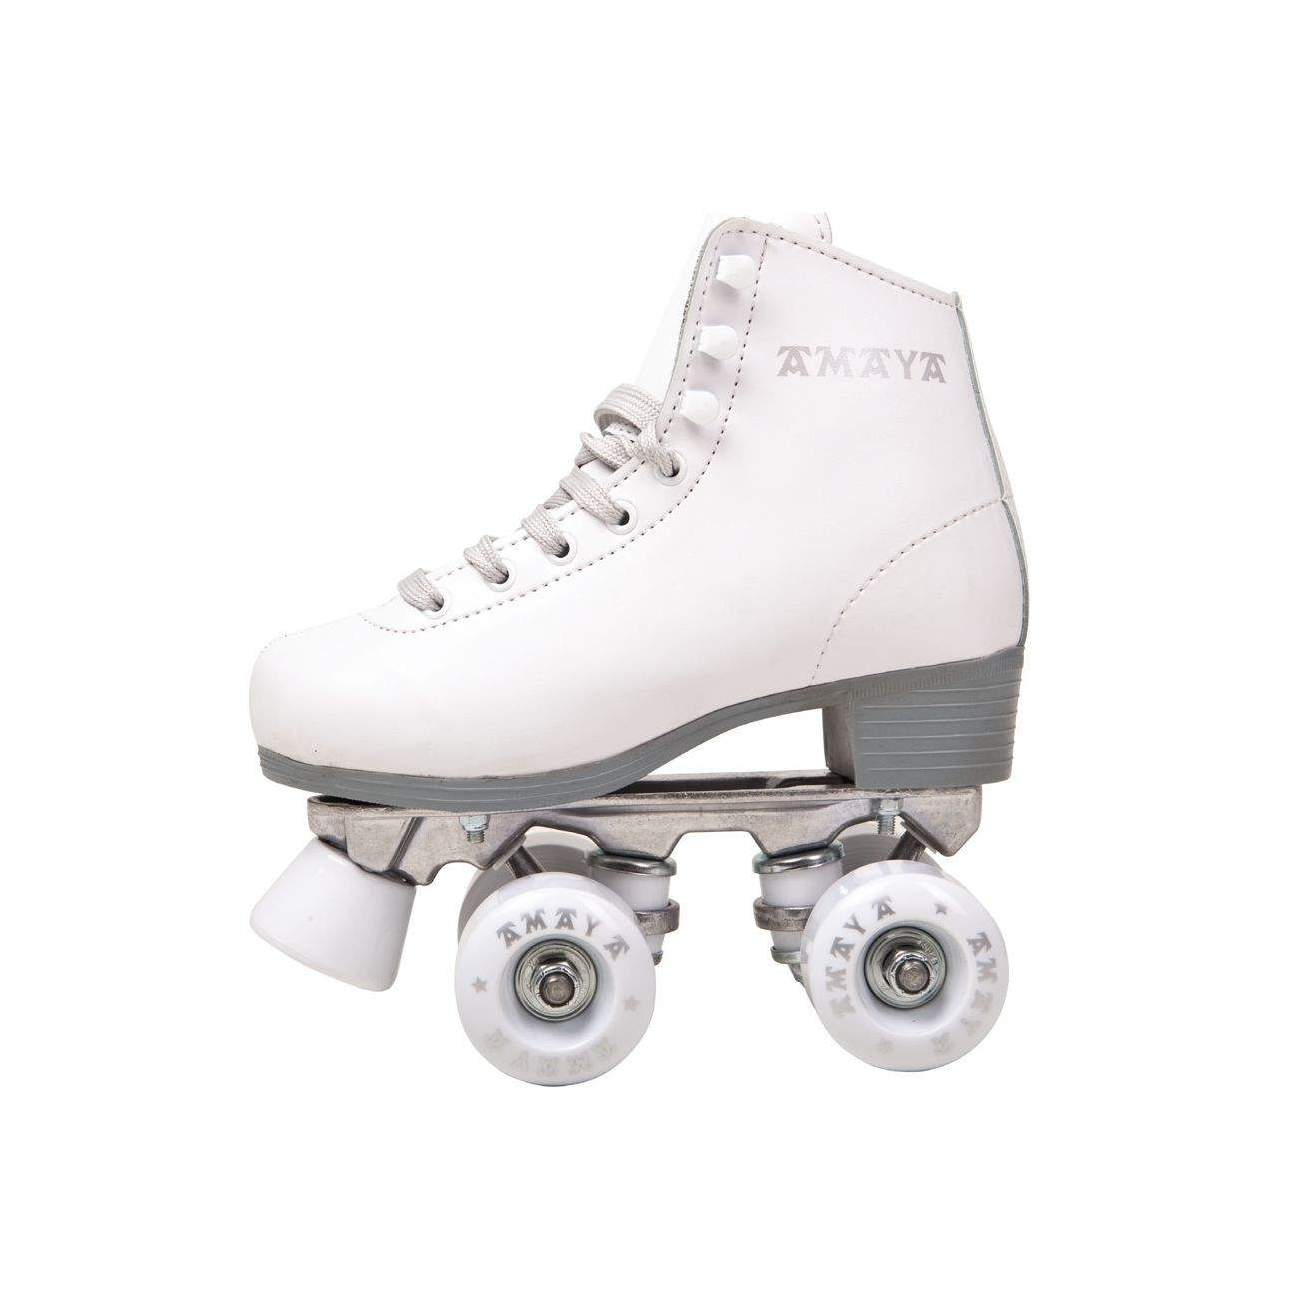 Los 10 mejores patines de 4 ruedas para niñas 